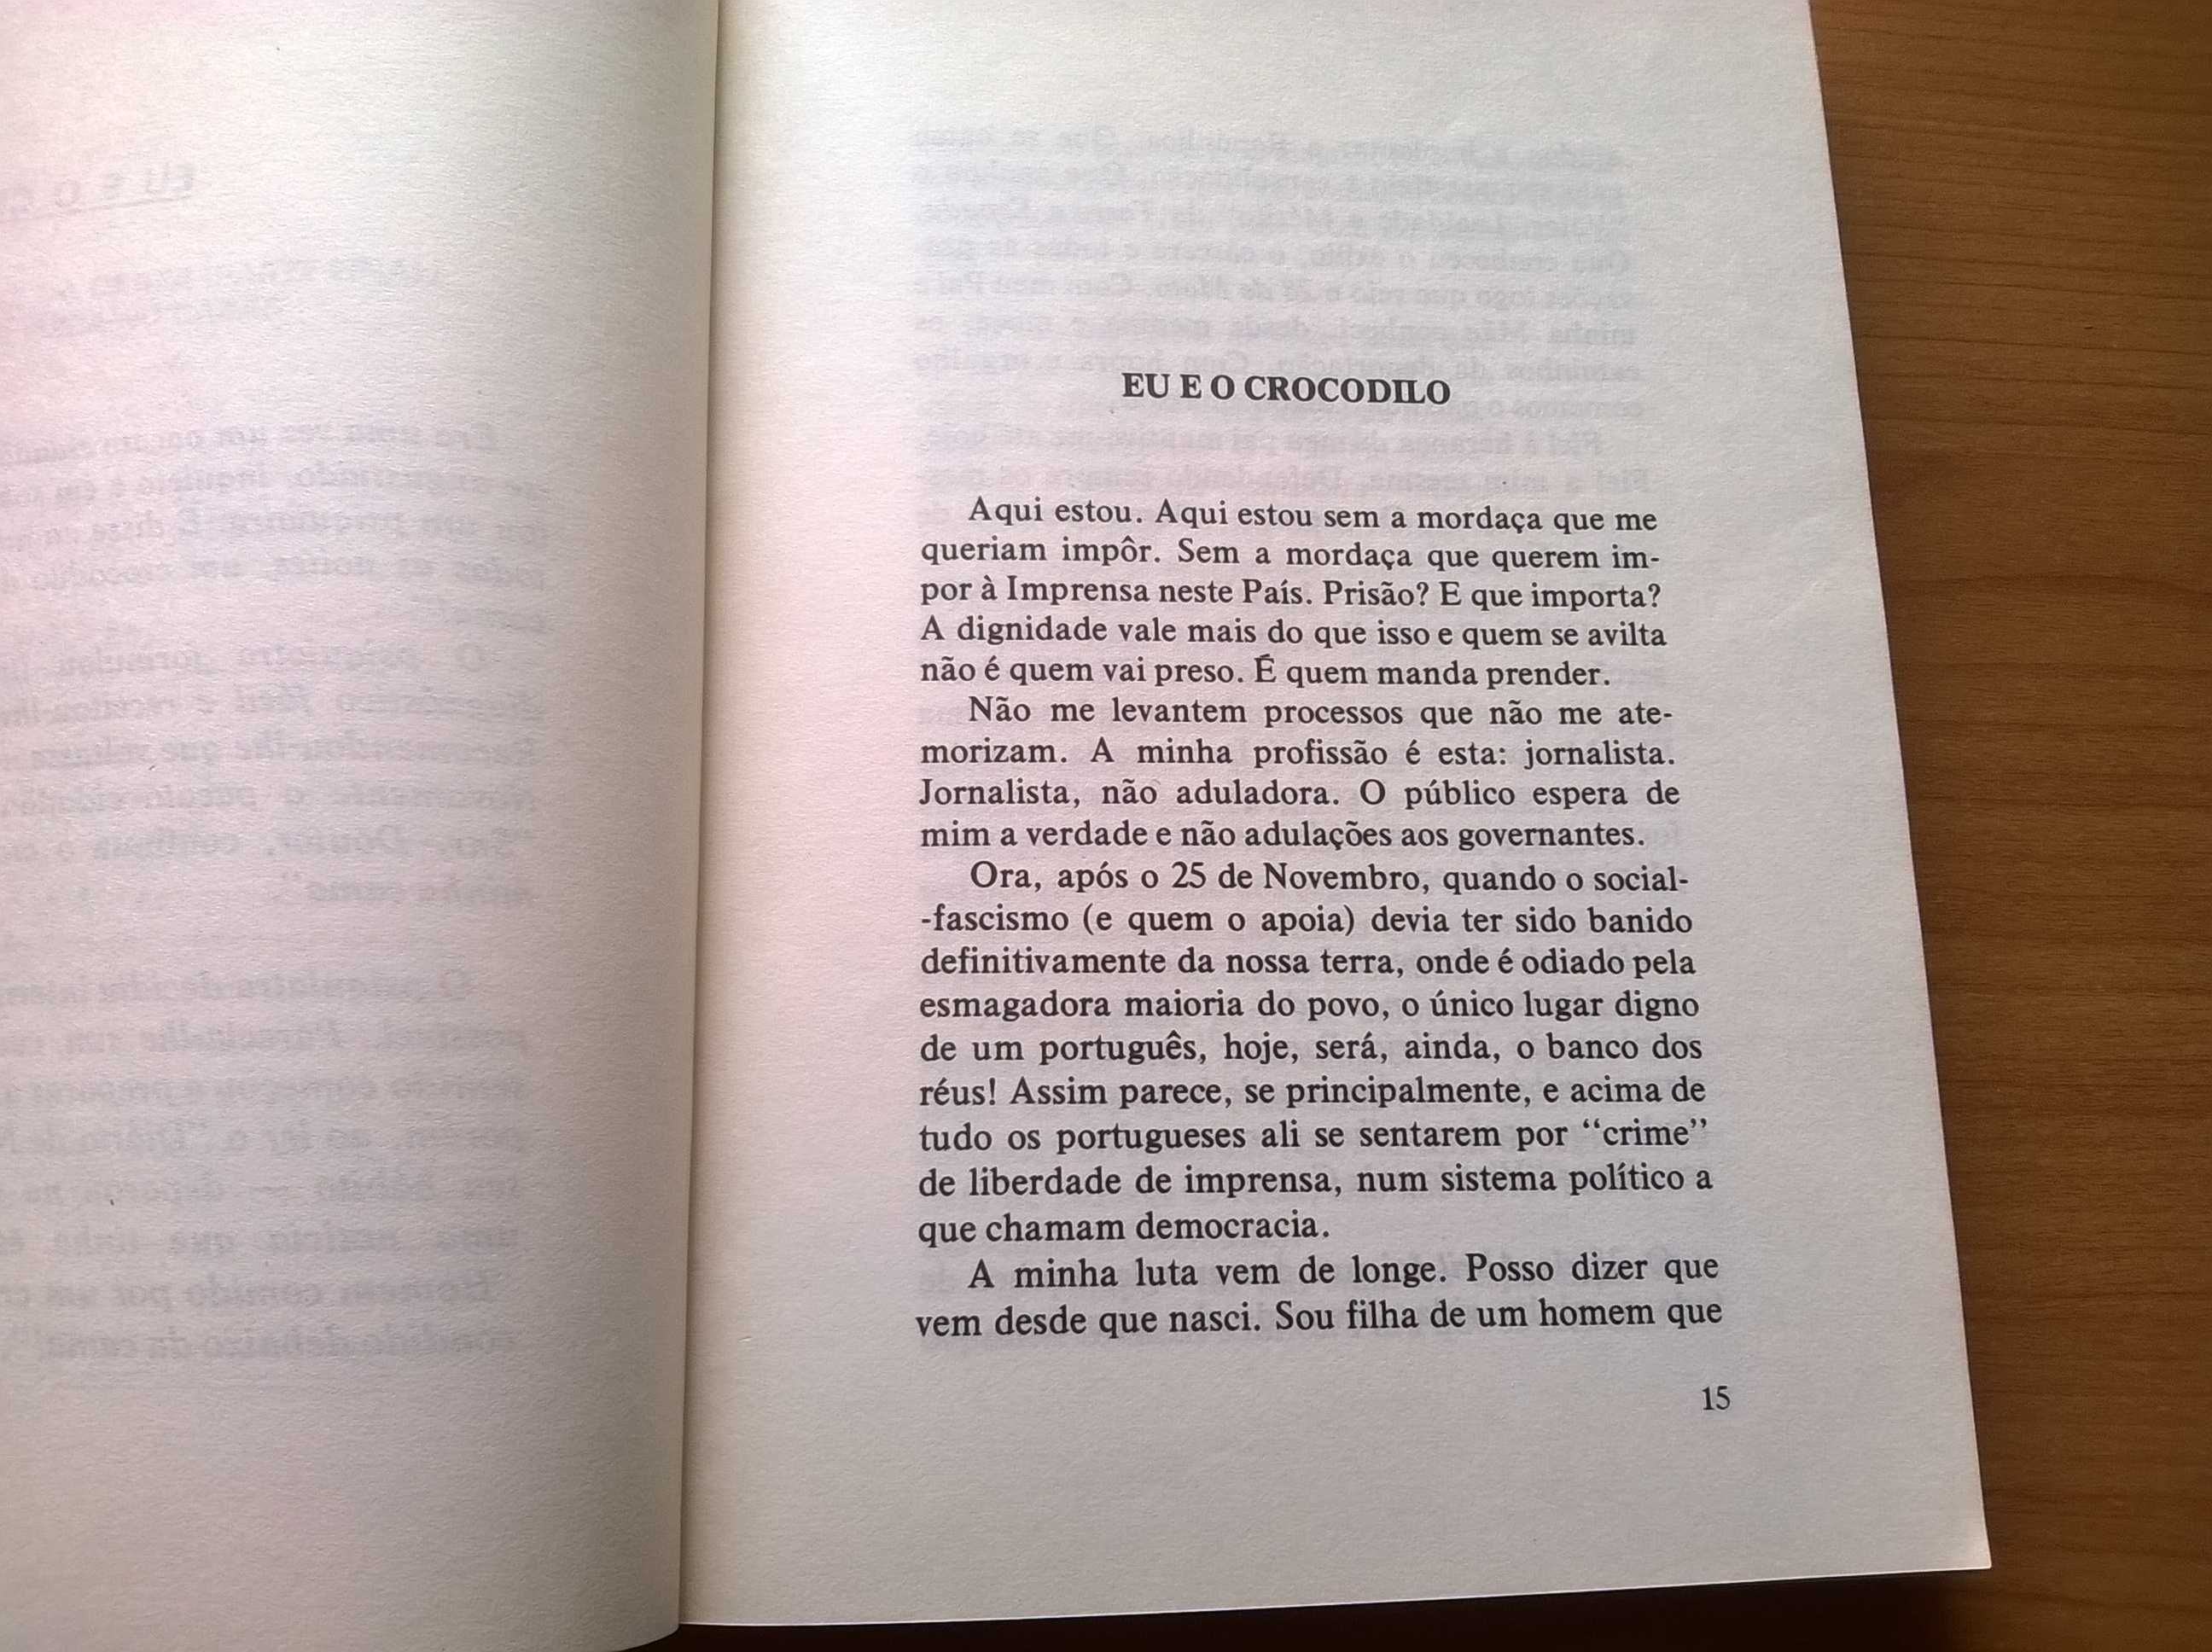 A Cambada (3.ª ed.) - Vera Lagoa (portes grátis)